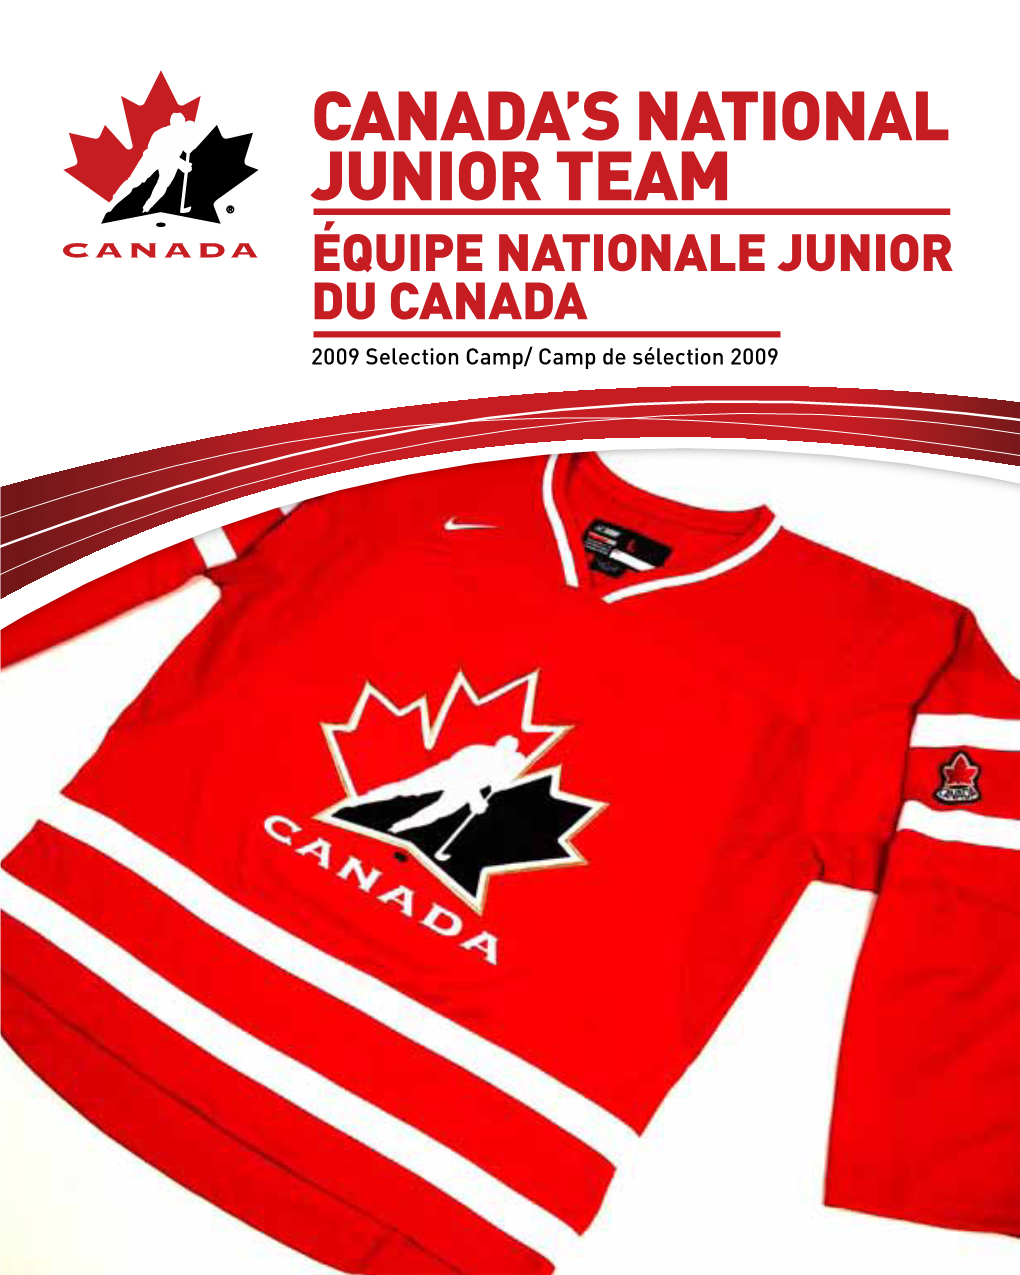 Canadals National Junior Team